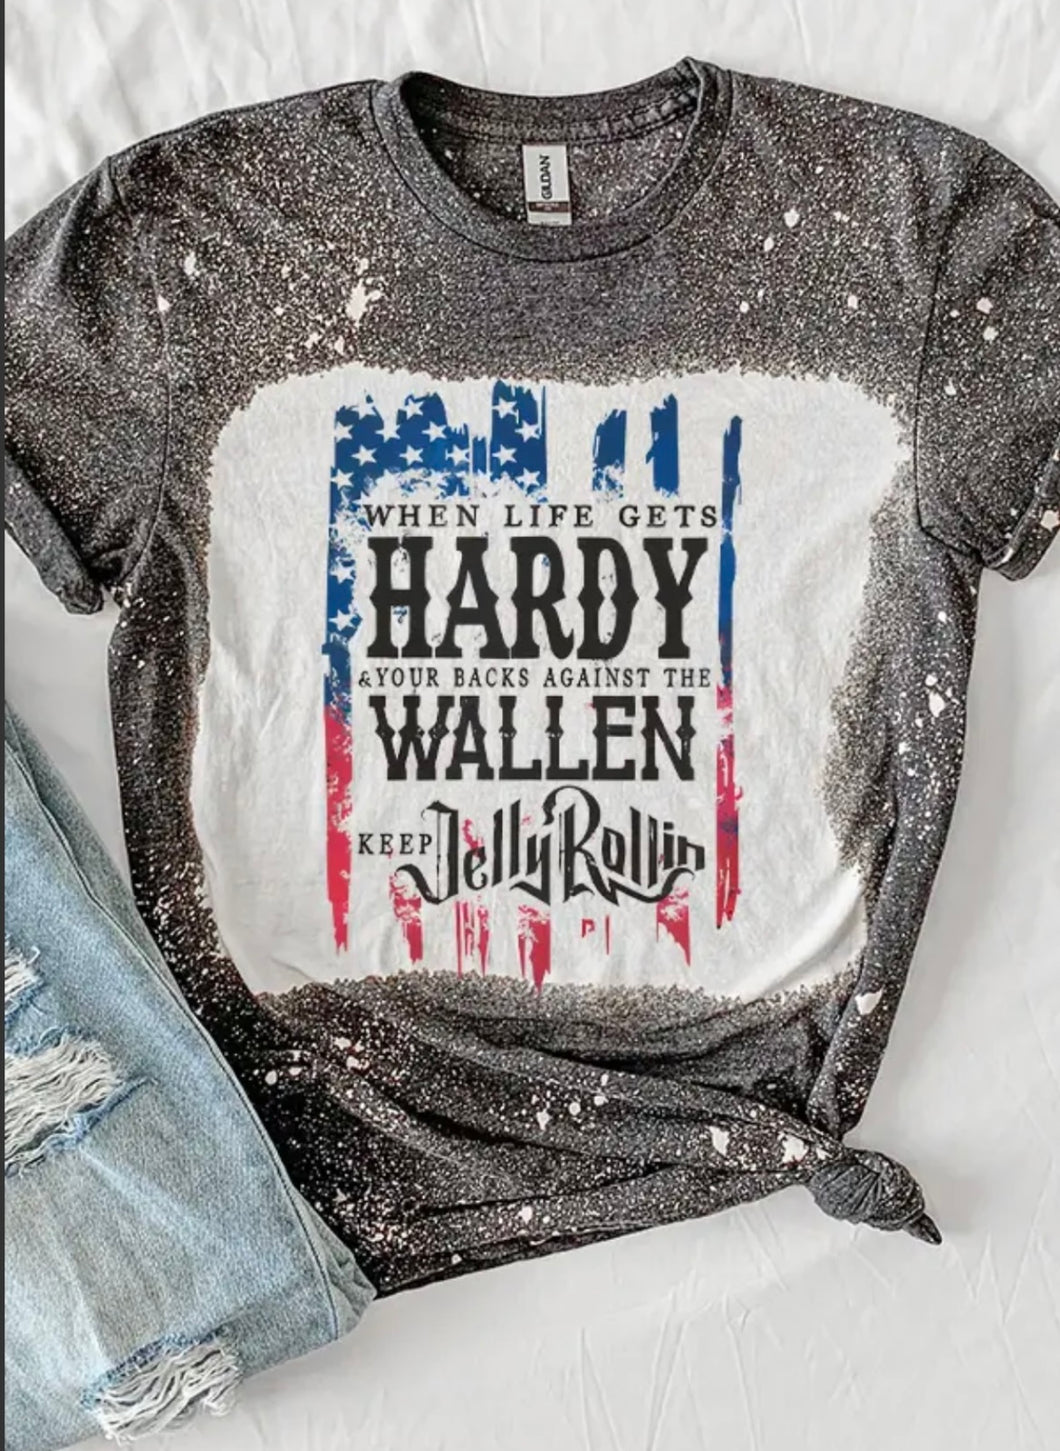 Hardy Wallen Jelly Rollin Tee